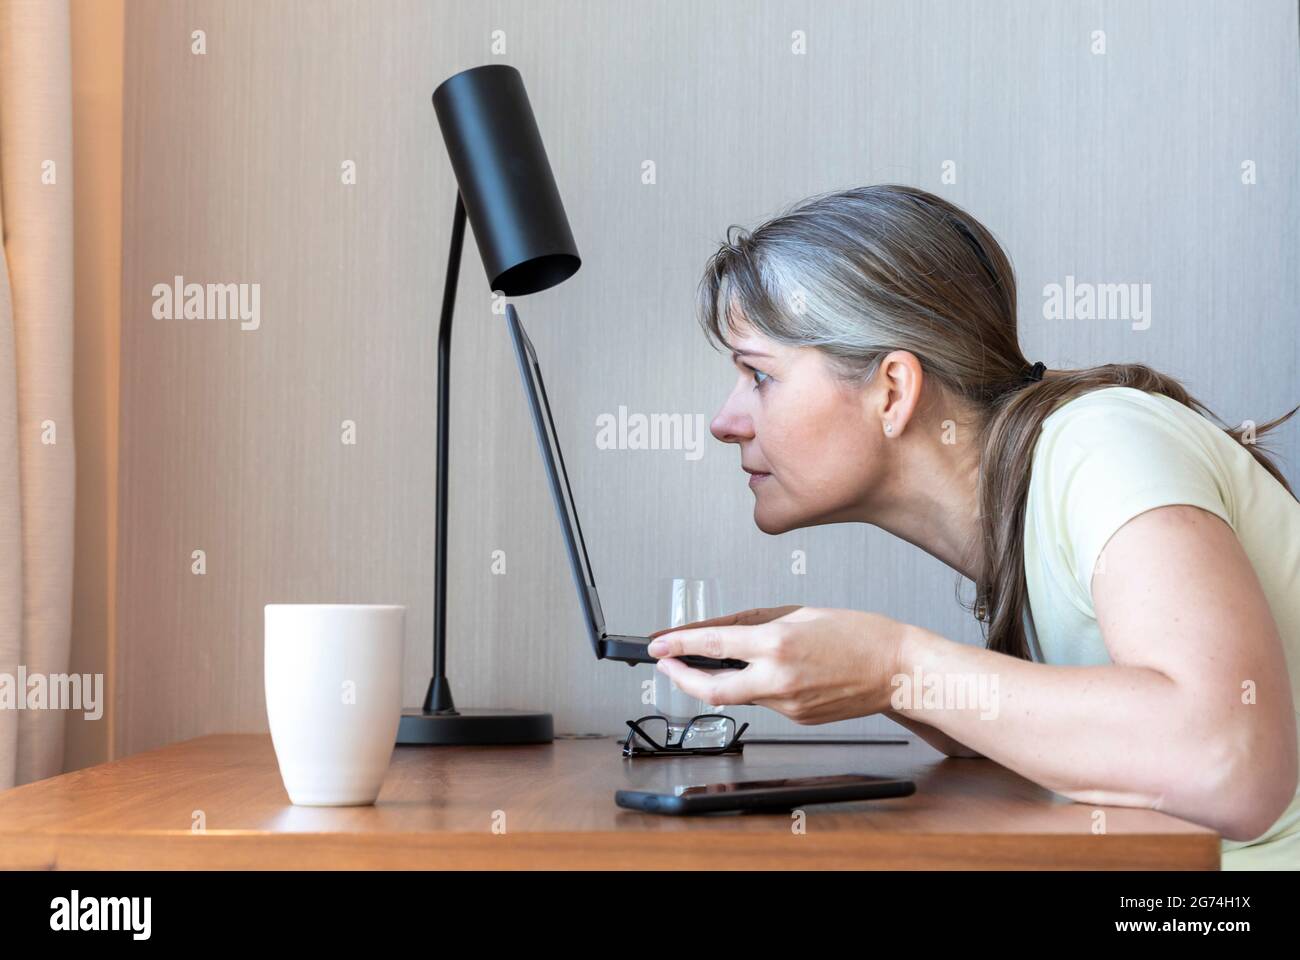 Femme avec une mauvaise vue travaillant dans son ordinateur portable, luttant pour voir Banque D'Images